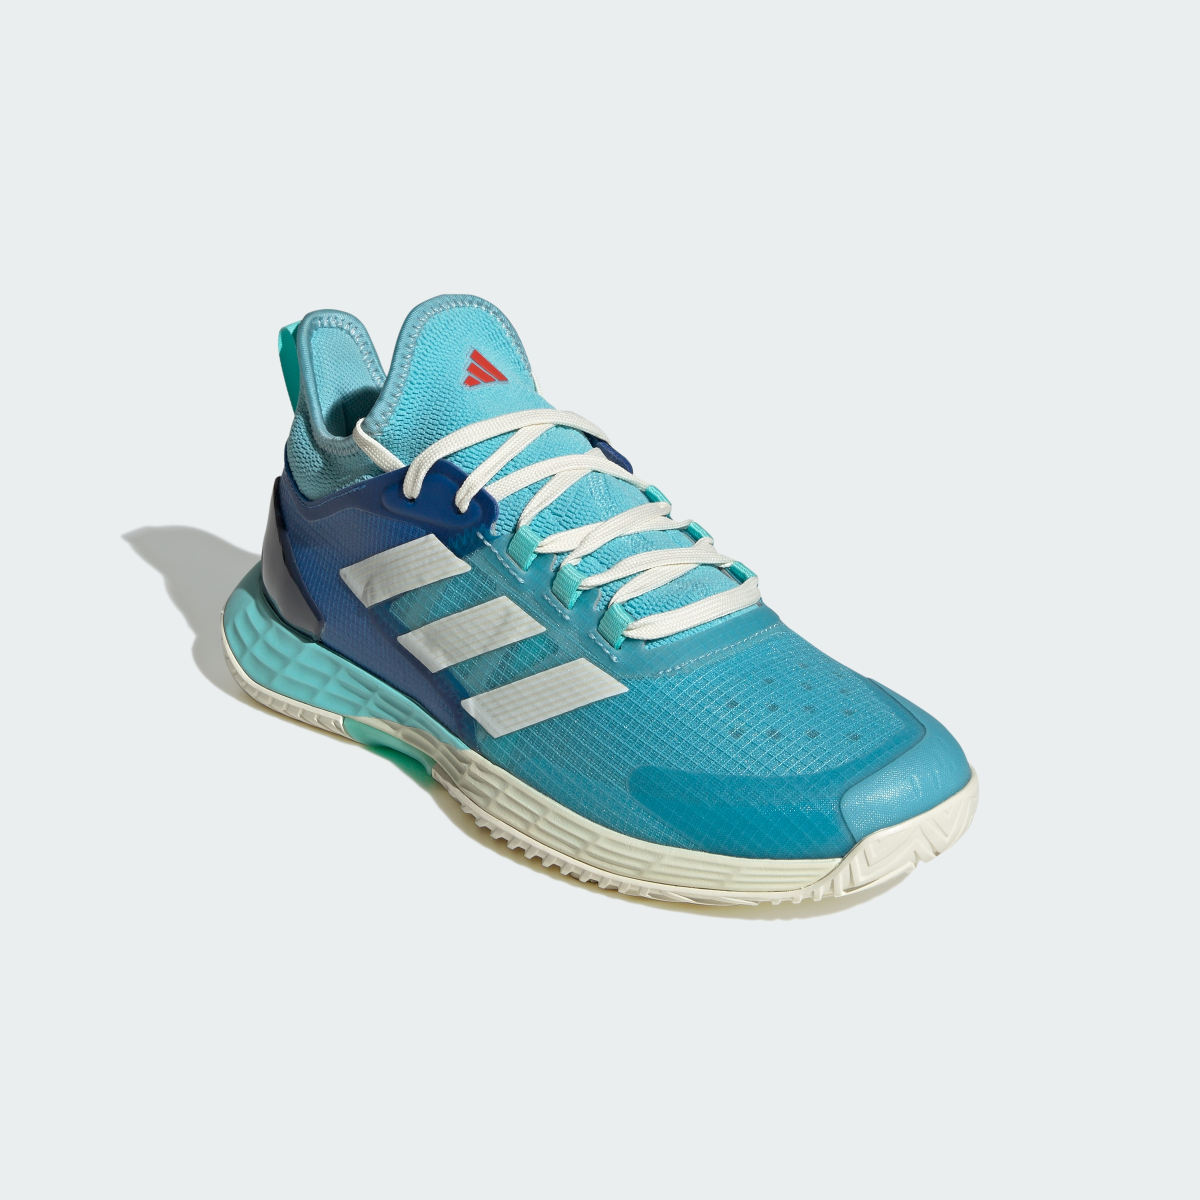 Adidas Adizero Ubersonic 4.1 Tennis Shoes. 5